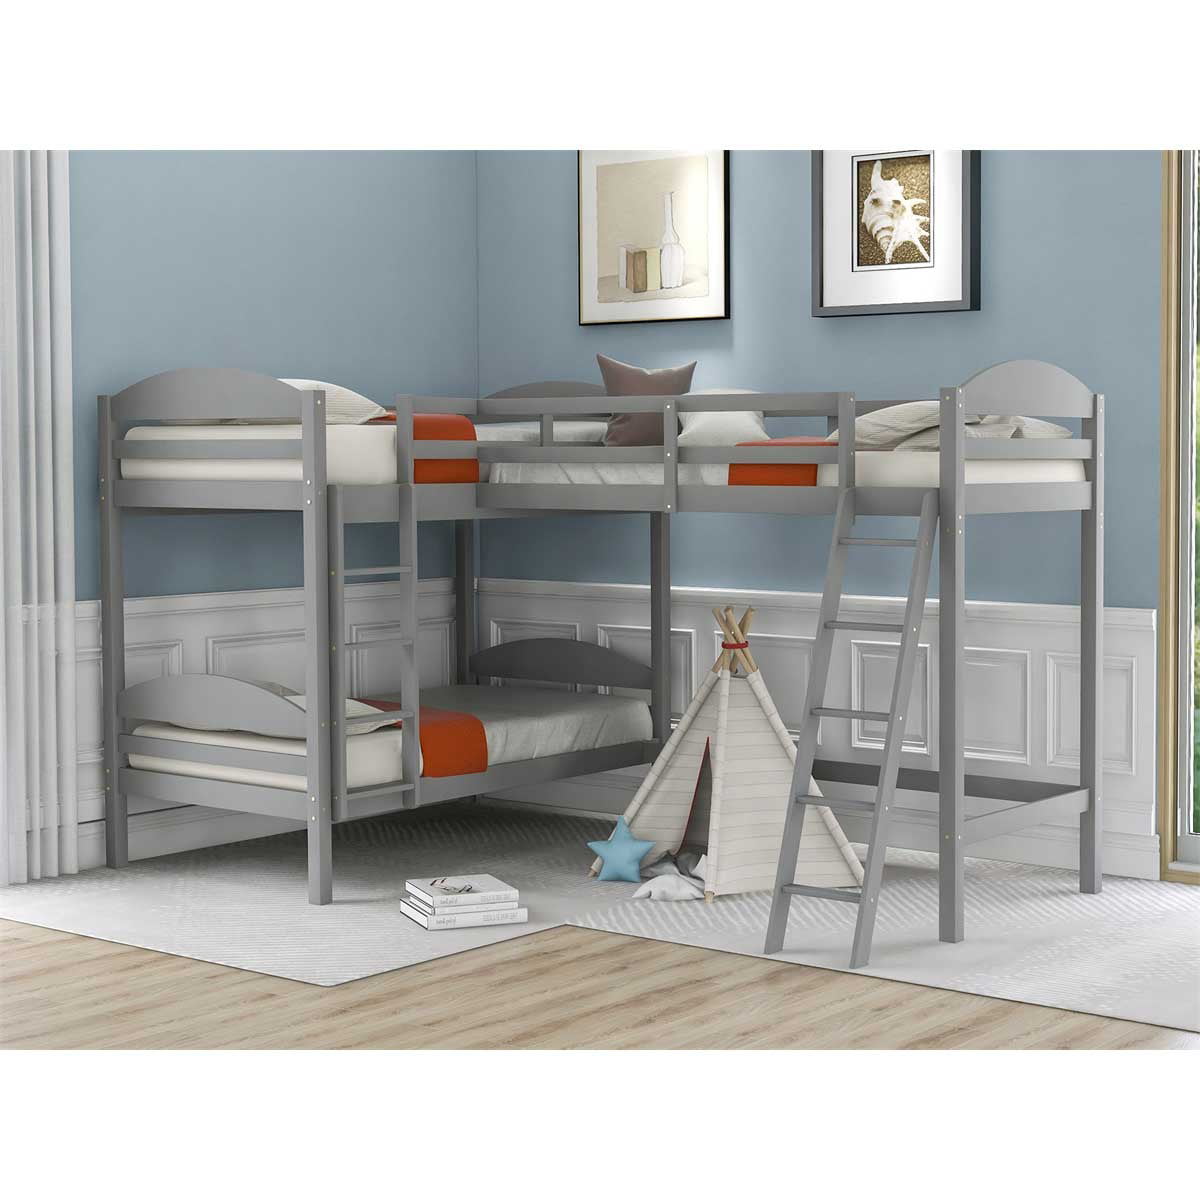 Triple Bunk Bed Wooden Loft, L Shaped Triple Bunk Bed Plans Free